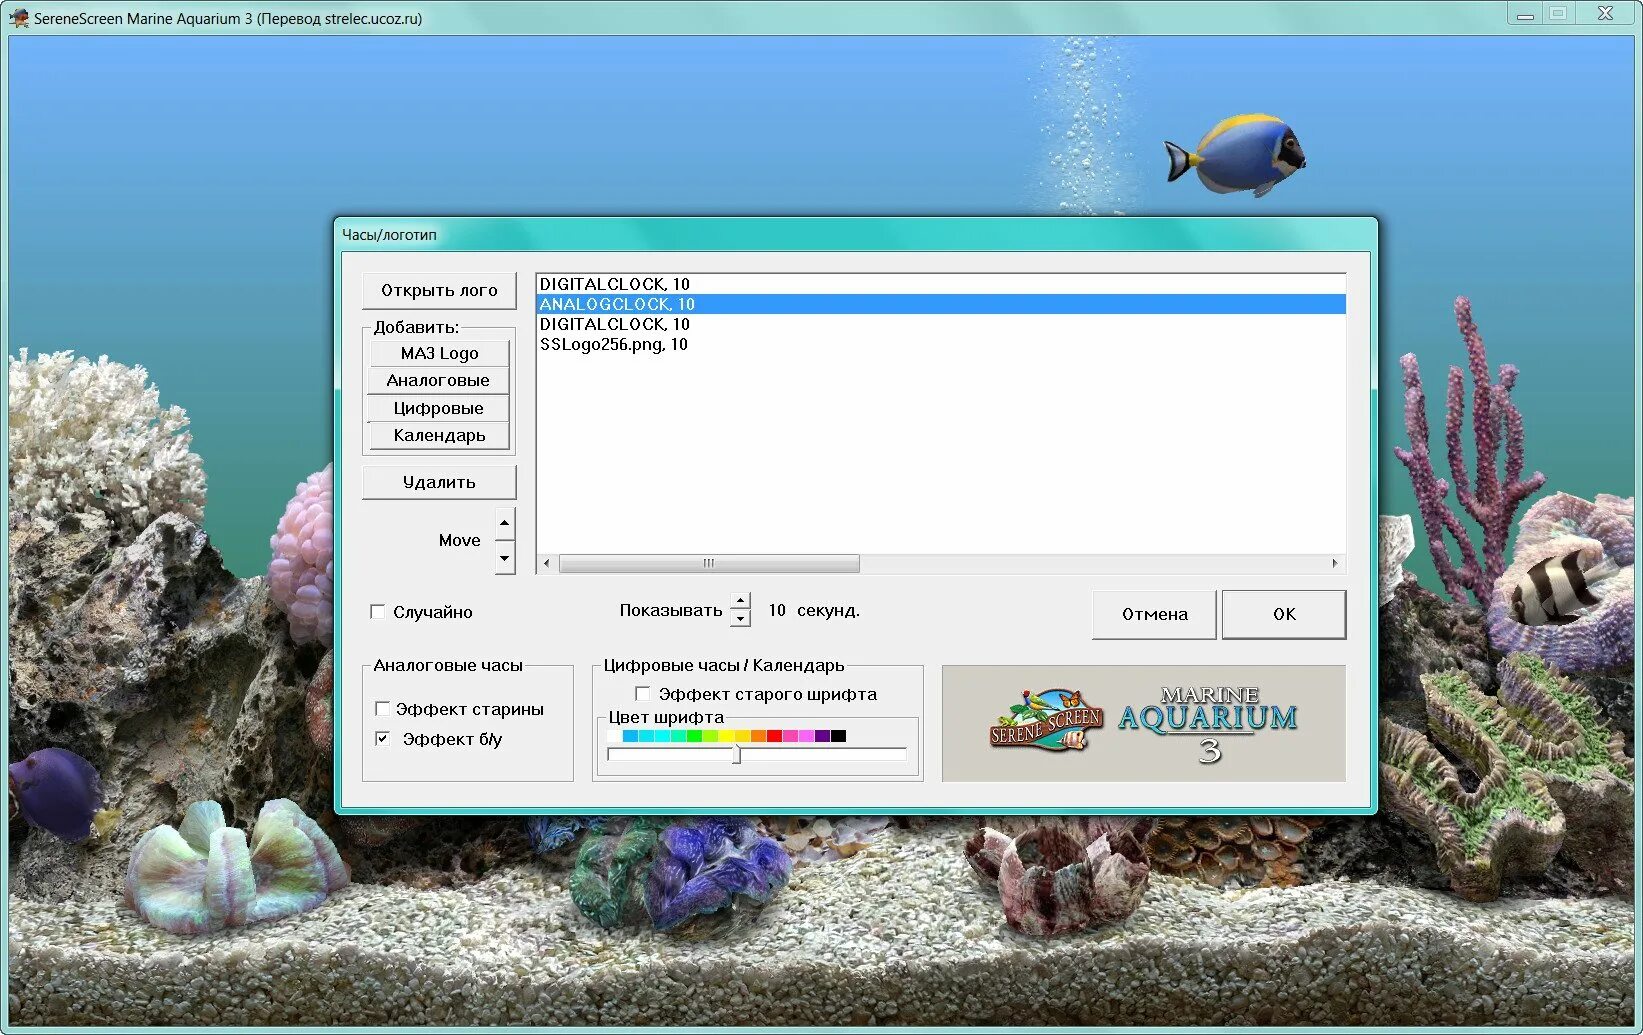 Заставка Marine Aquarium 3. SERENESCREEN Marine Aquarium. Программа для аквариума. Программы для изменения рабочего стола аквариум. Aquarium 3